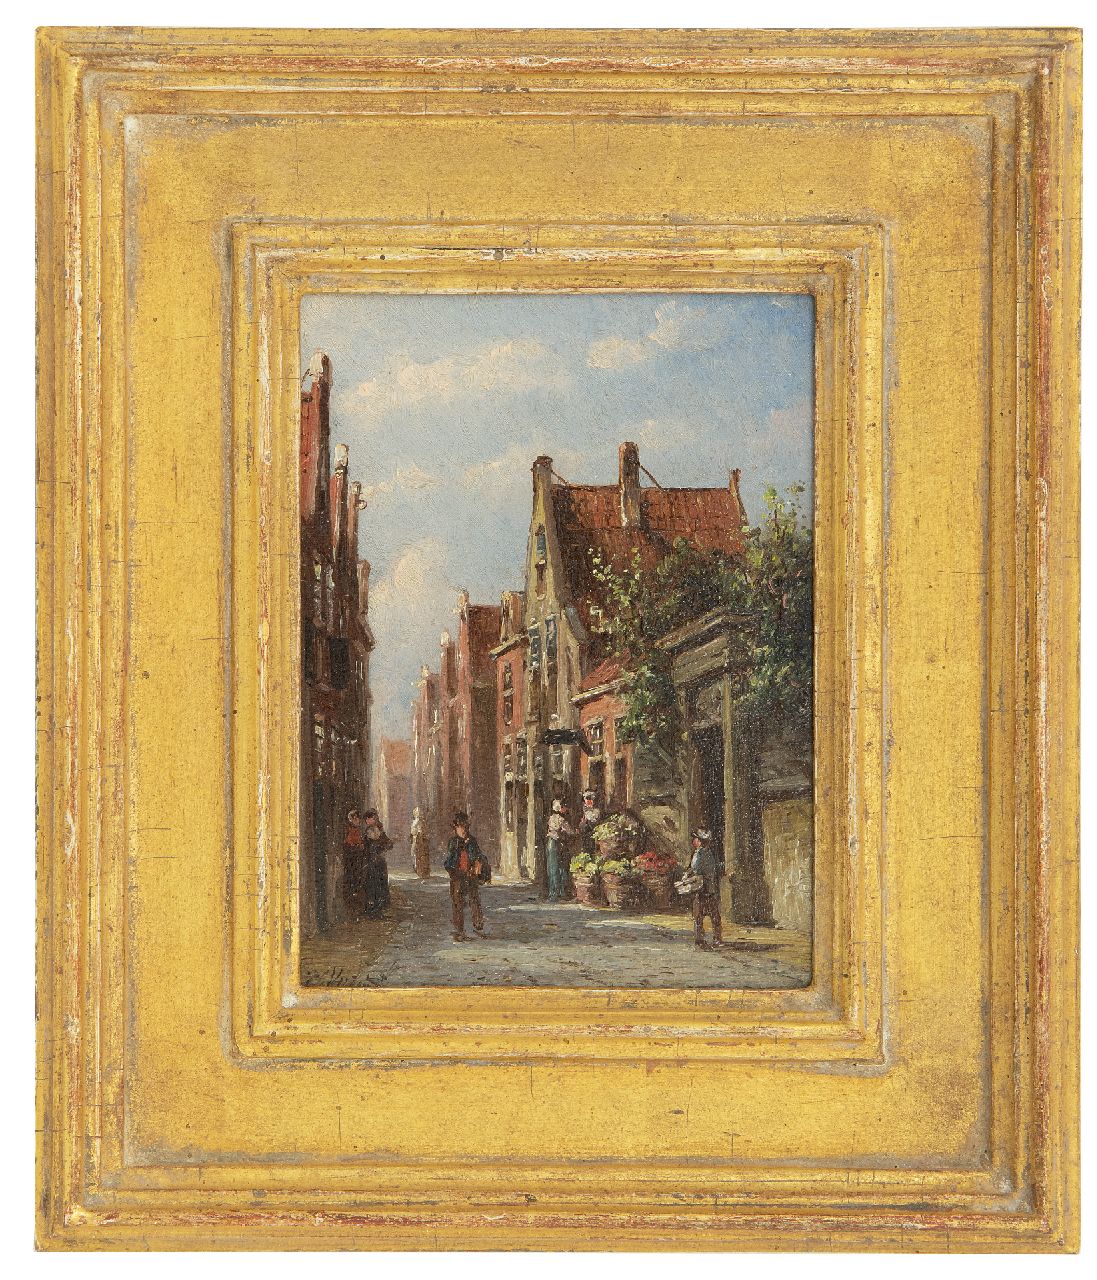 Vertin P.G.  | Petrus Gerardus Vertin | Schilderijen te koop aangeboden | Zonnig straatje met groenteverkoopster, olieverf op paneel 13,4 x 10,2 cm, gesigneerd linksonder